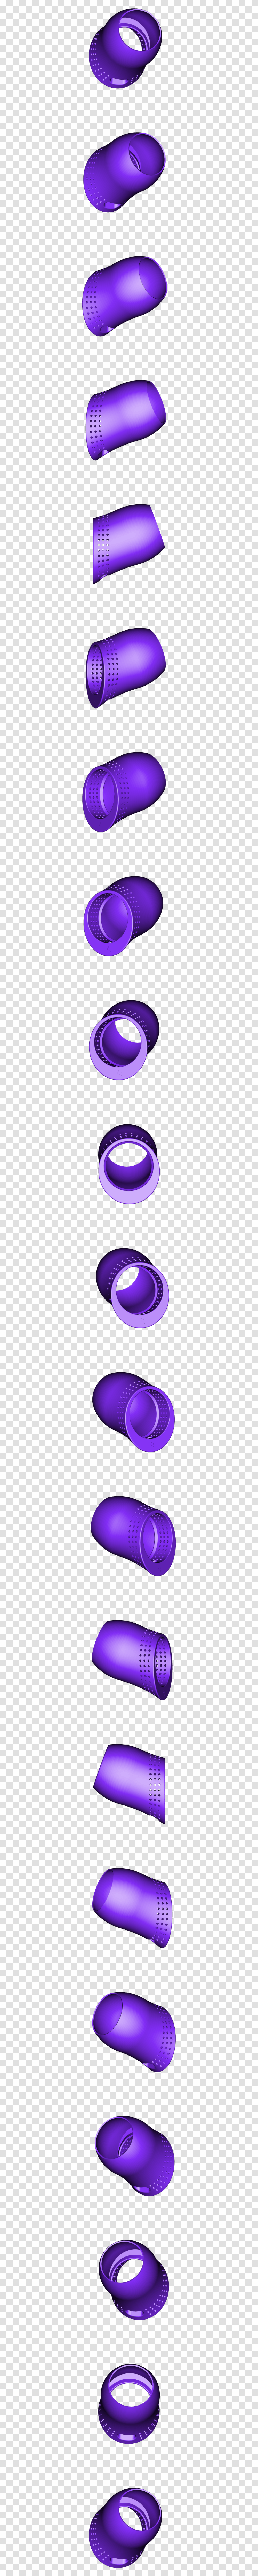 Echo Dot, Sphere, Purple Transparent Png